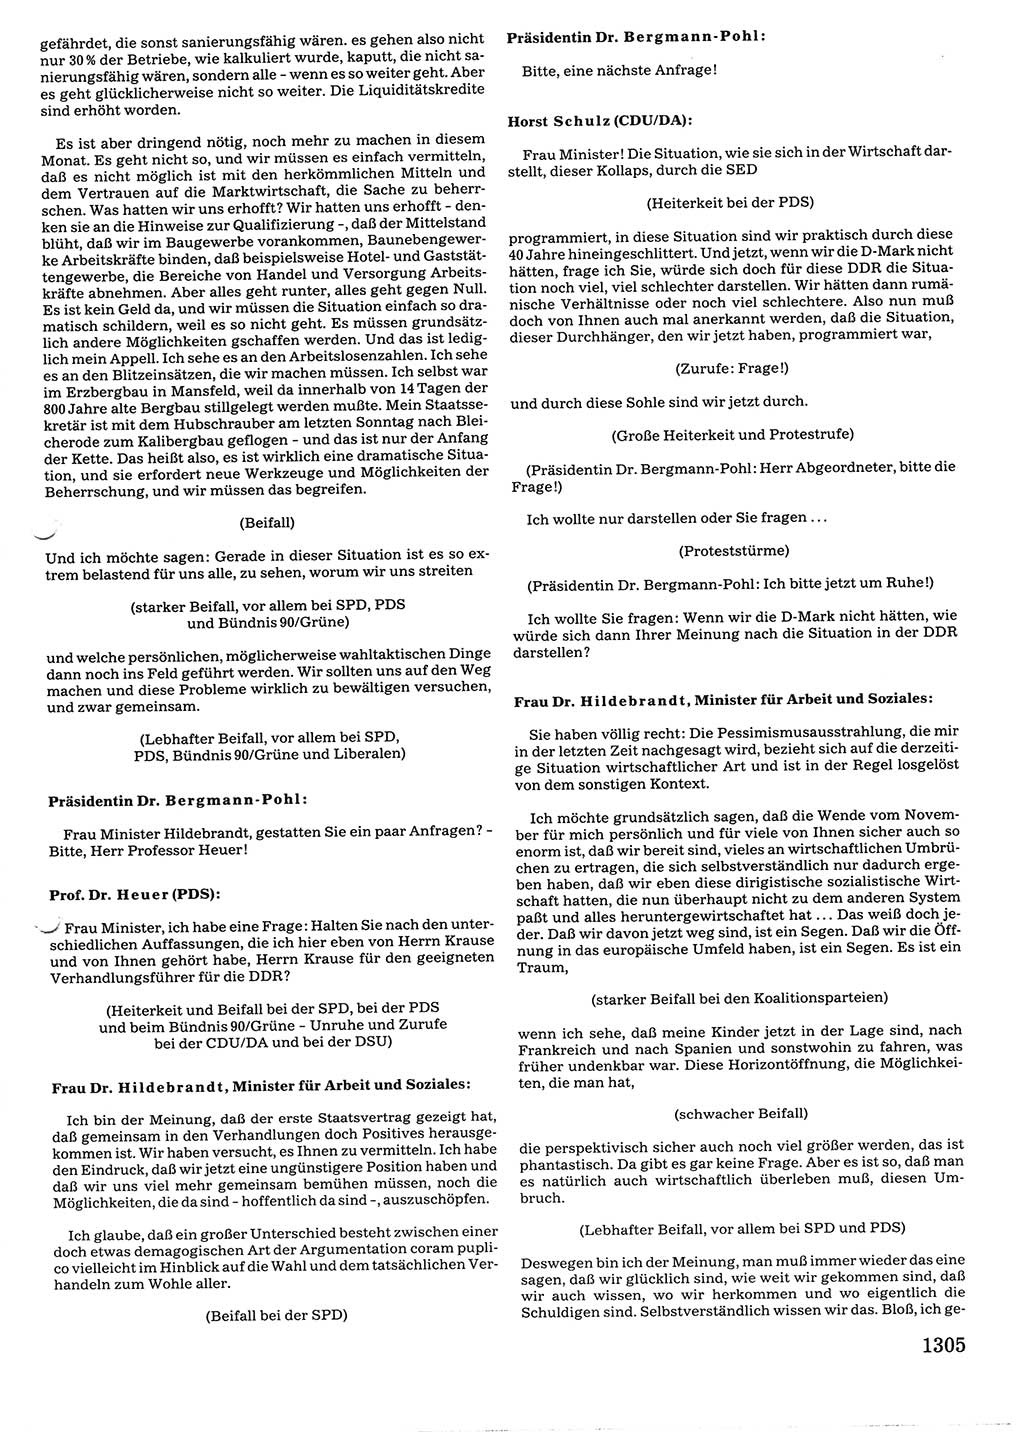 Tagungen der Volkskammer (VK) der Deutschen Demokratischen Republik (DDR), 10. Wahlperiode 1990, Seite 1305 (VK. DDR 10. WP. 1990, Prot. Tg. 1-38, 5.4.-2.10.1990, S. 1305)